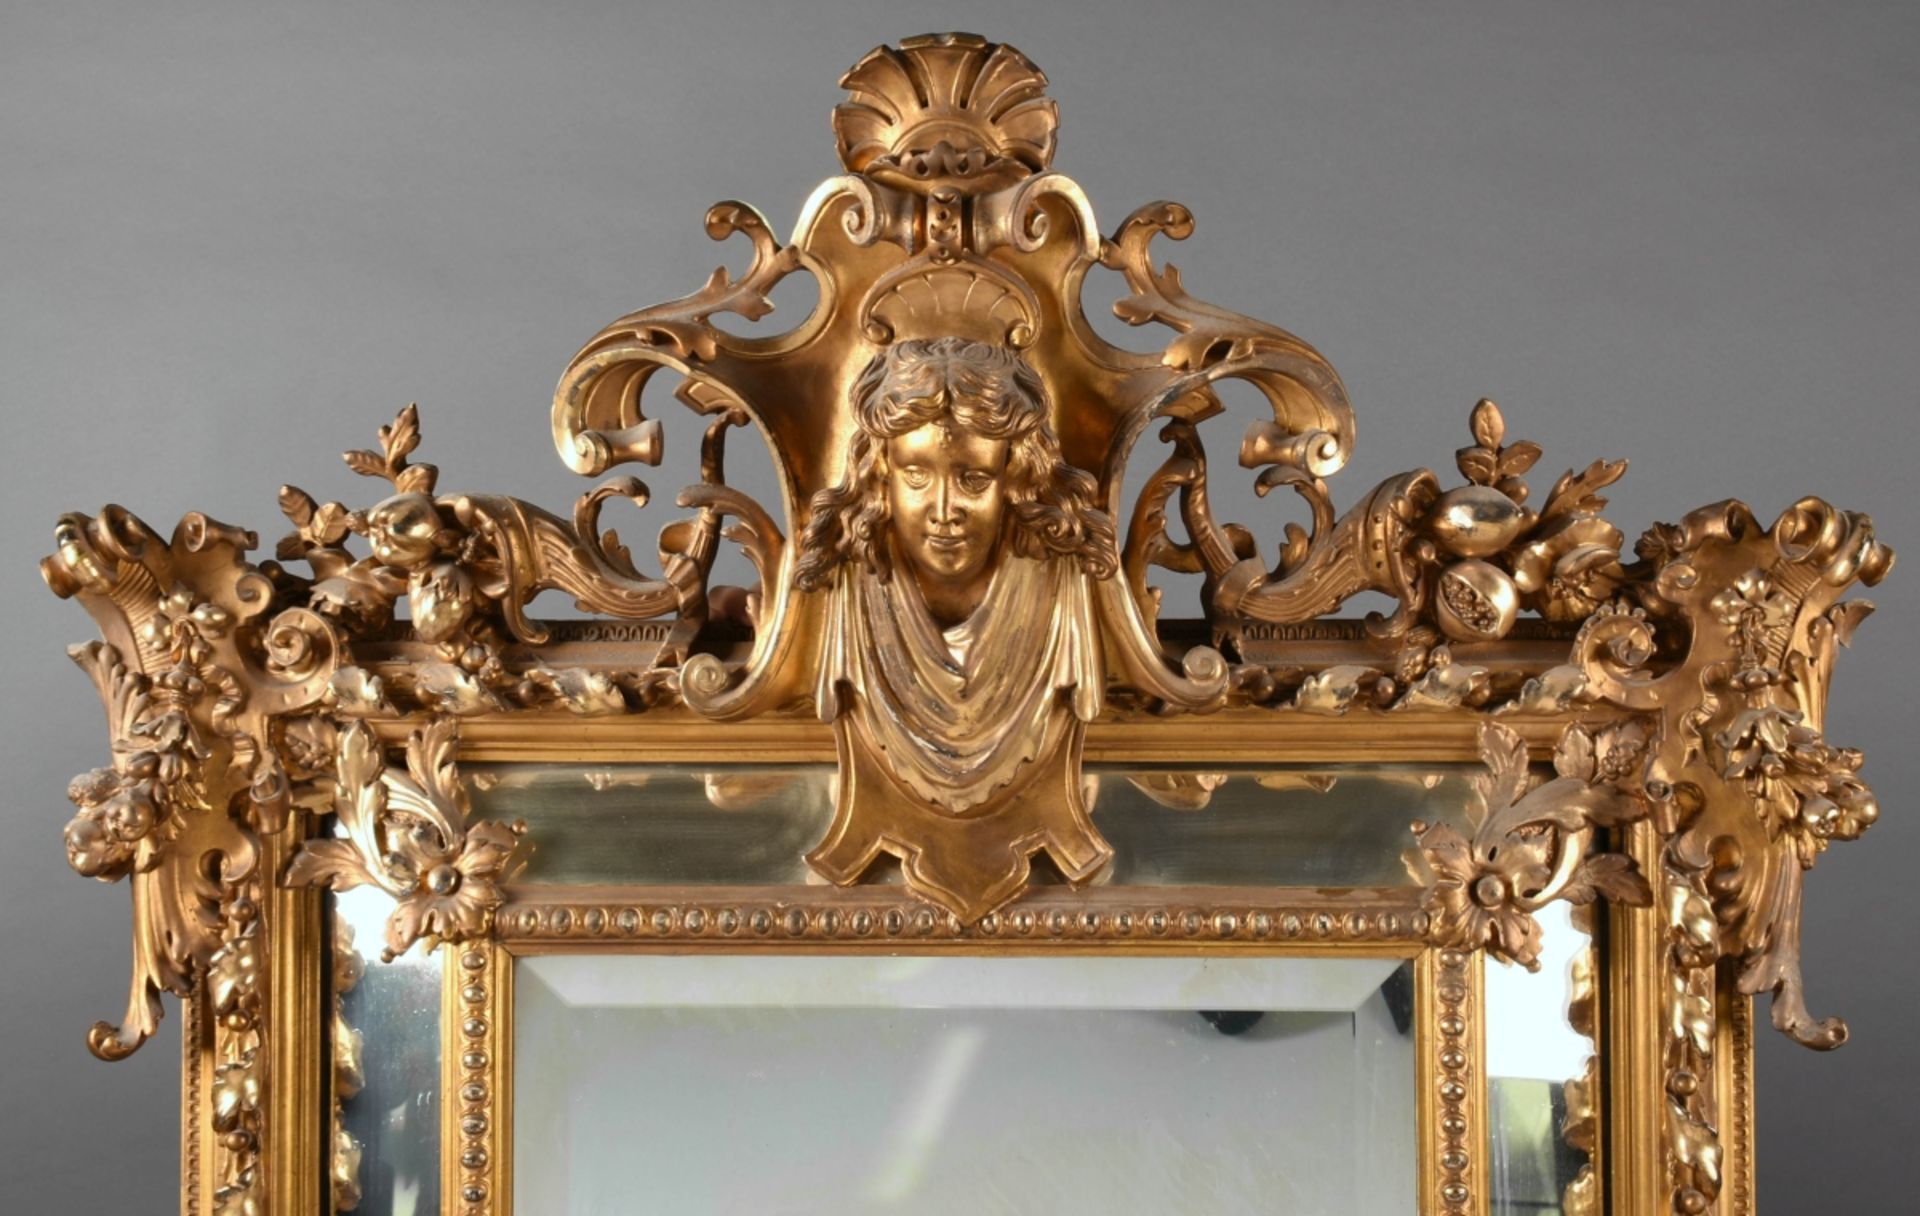 Prunkwandspiegel Holz geschnitzt und goldstuckiert, aufwendig gearbeiteter neobarocker Wandspiegel - Image 3 of 4